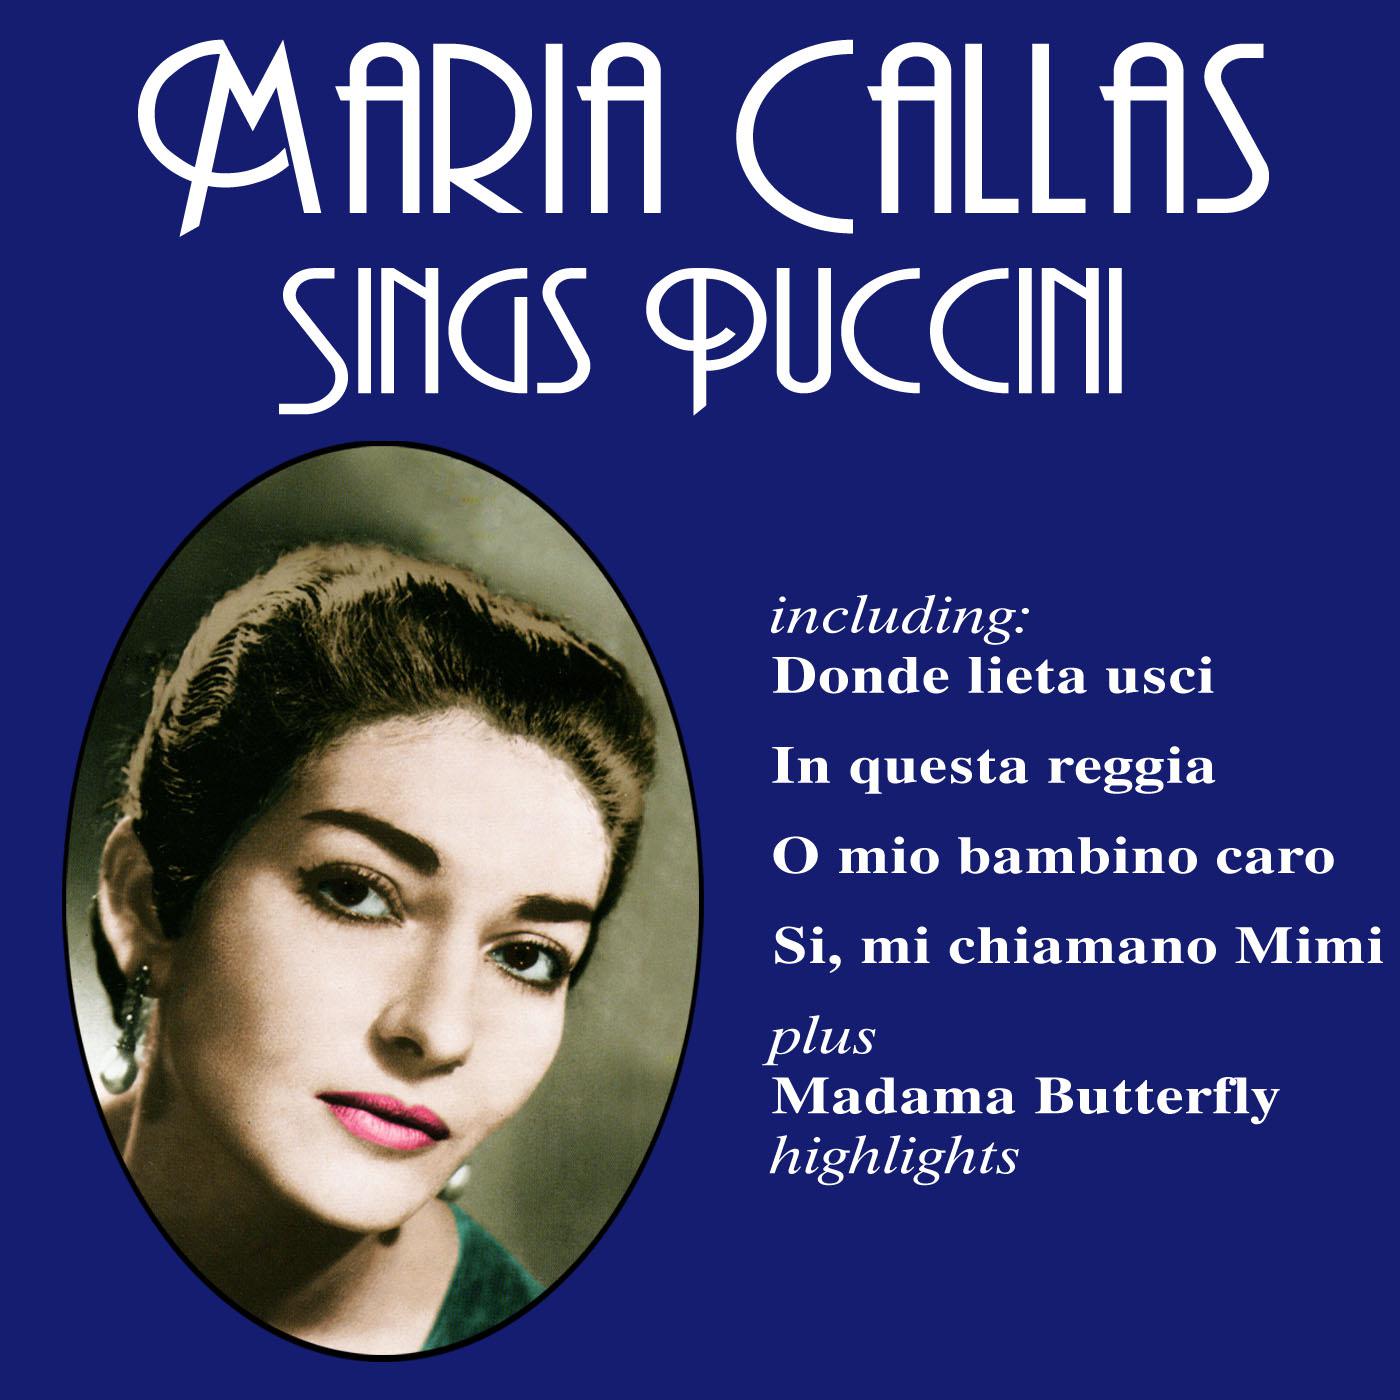 Maria Callas - Tu che di gel sei cinta (from Turandot)